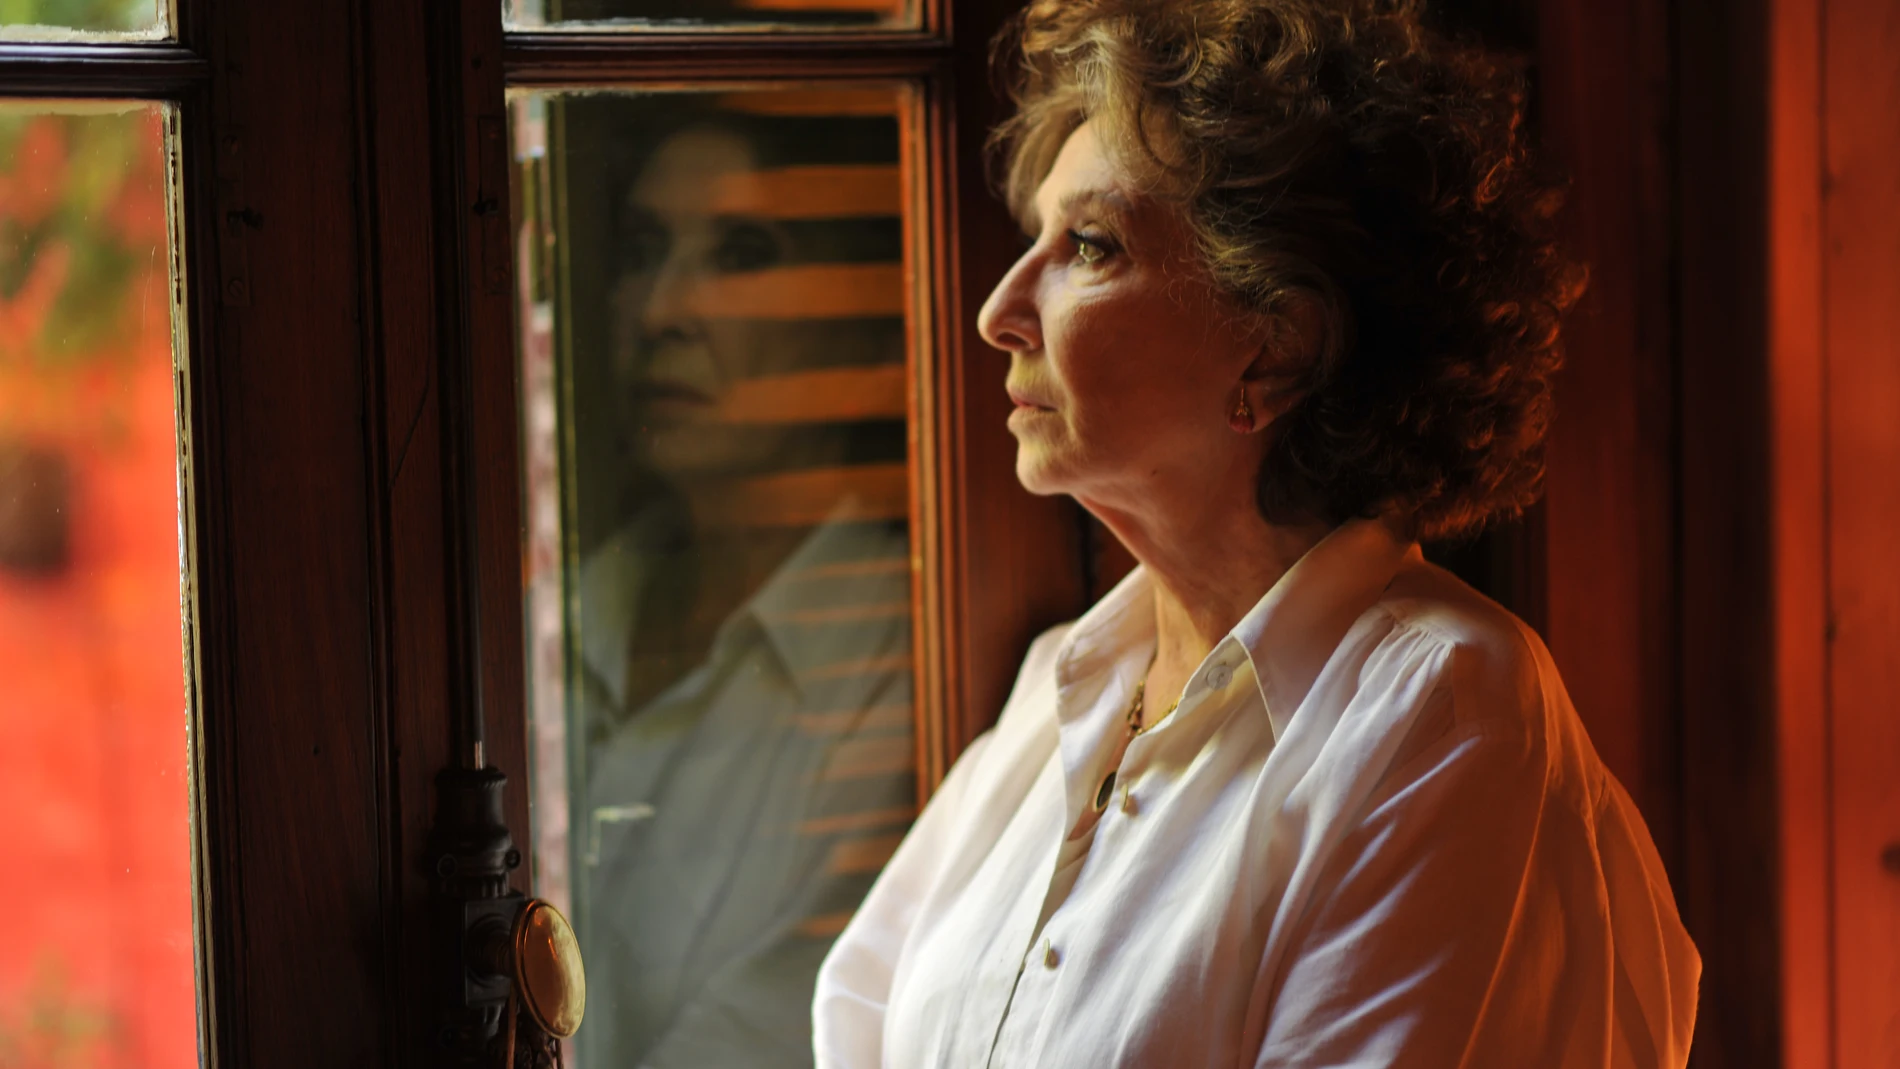 Norma Aleandro, protagonista del documental "El vuelo de la mariposa", de Carlos Duarte Quin